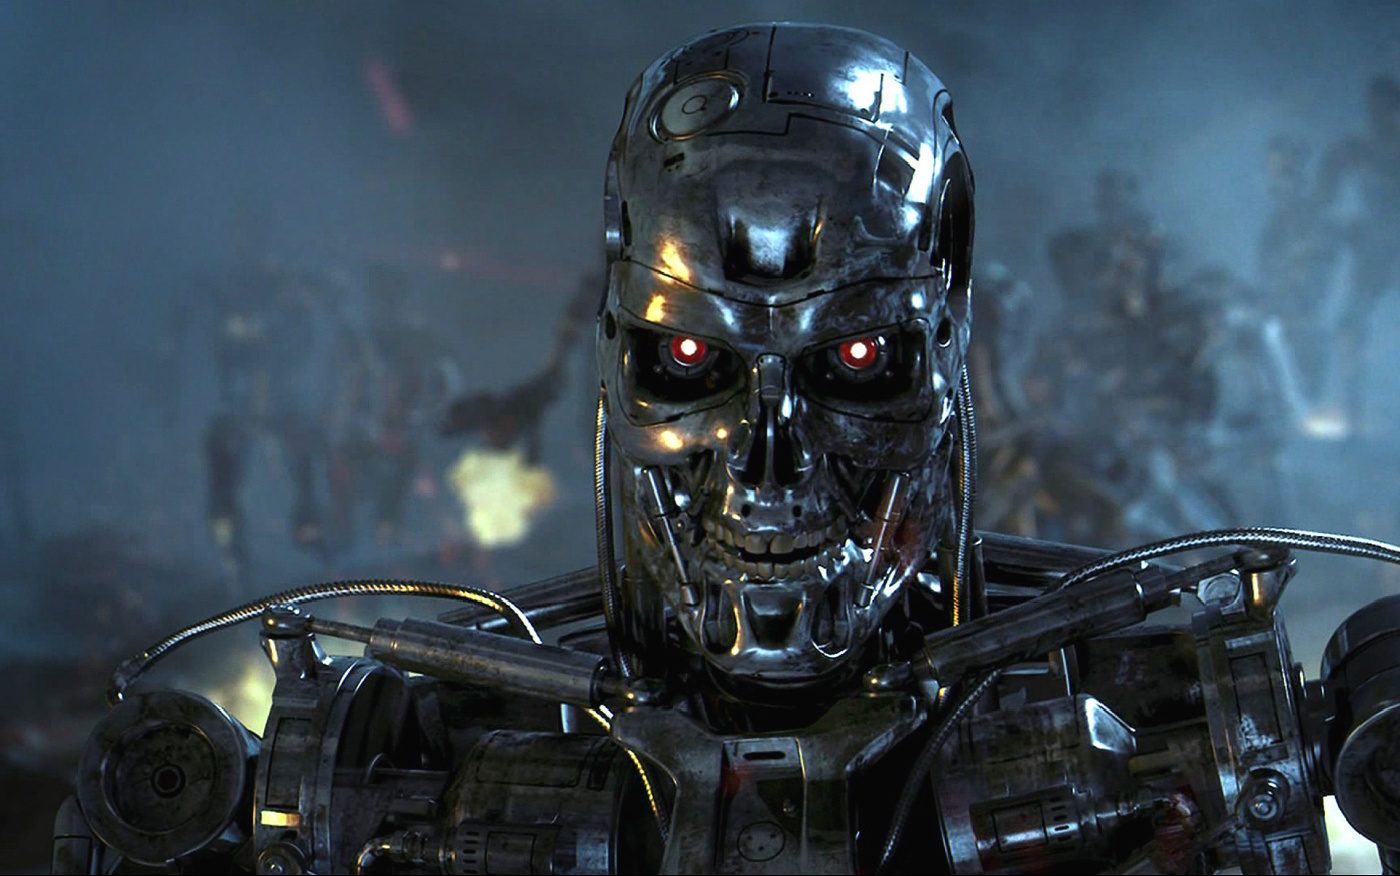 Робототехники обещали не вооружать роботов